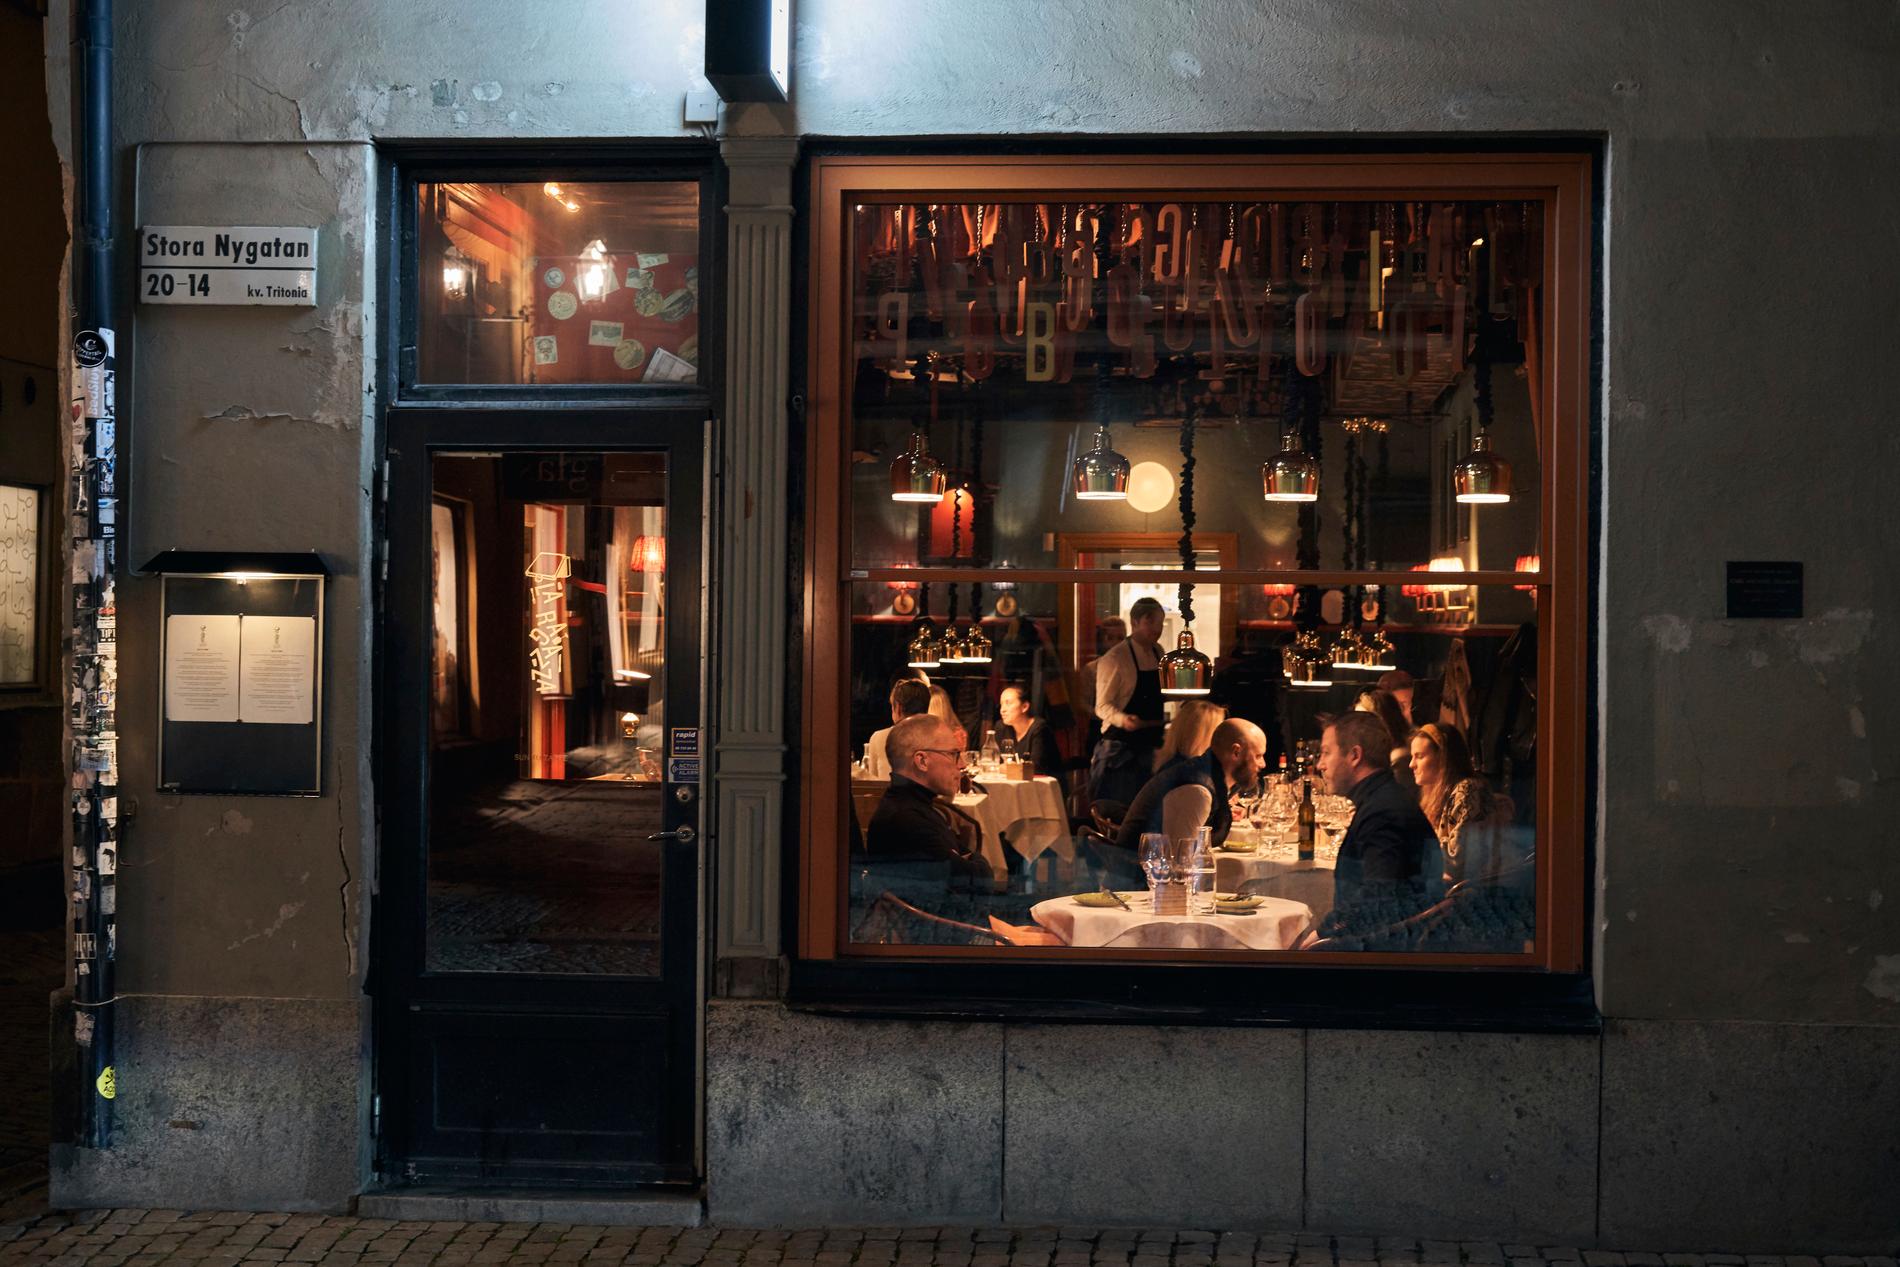 Gatorna i Stockholm är ödsliga men inte tomma, och vissa går fortfarande ut och äter på restaurang, konstaterar The New York Times i ett reportage på lördagen. Arkivbild.